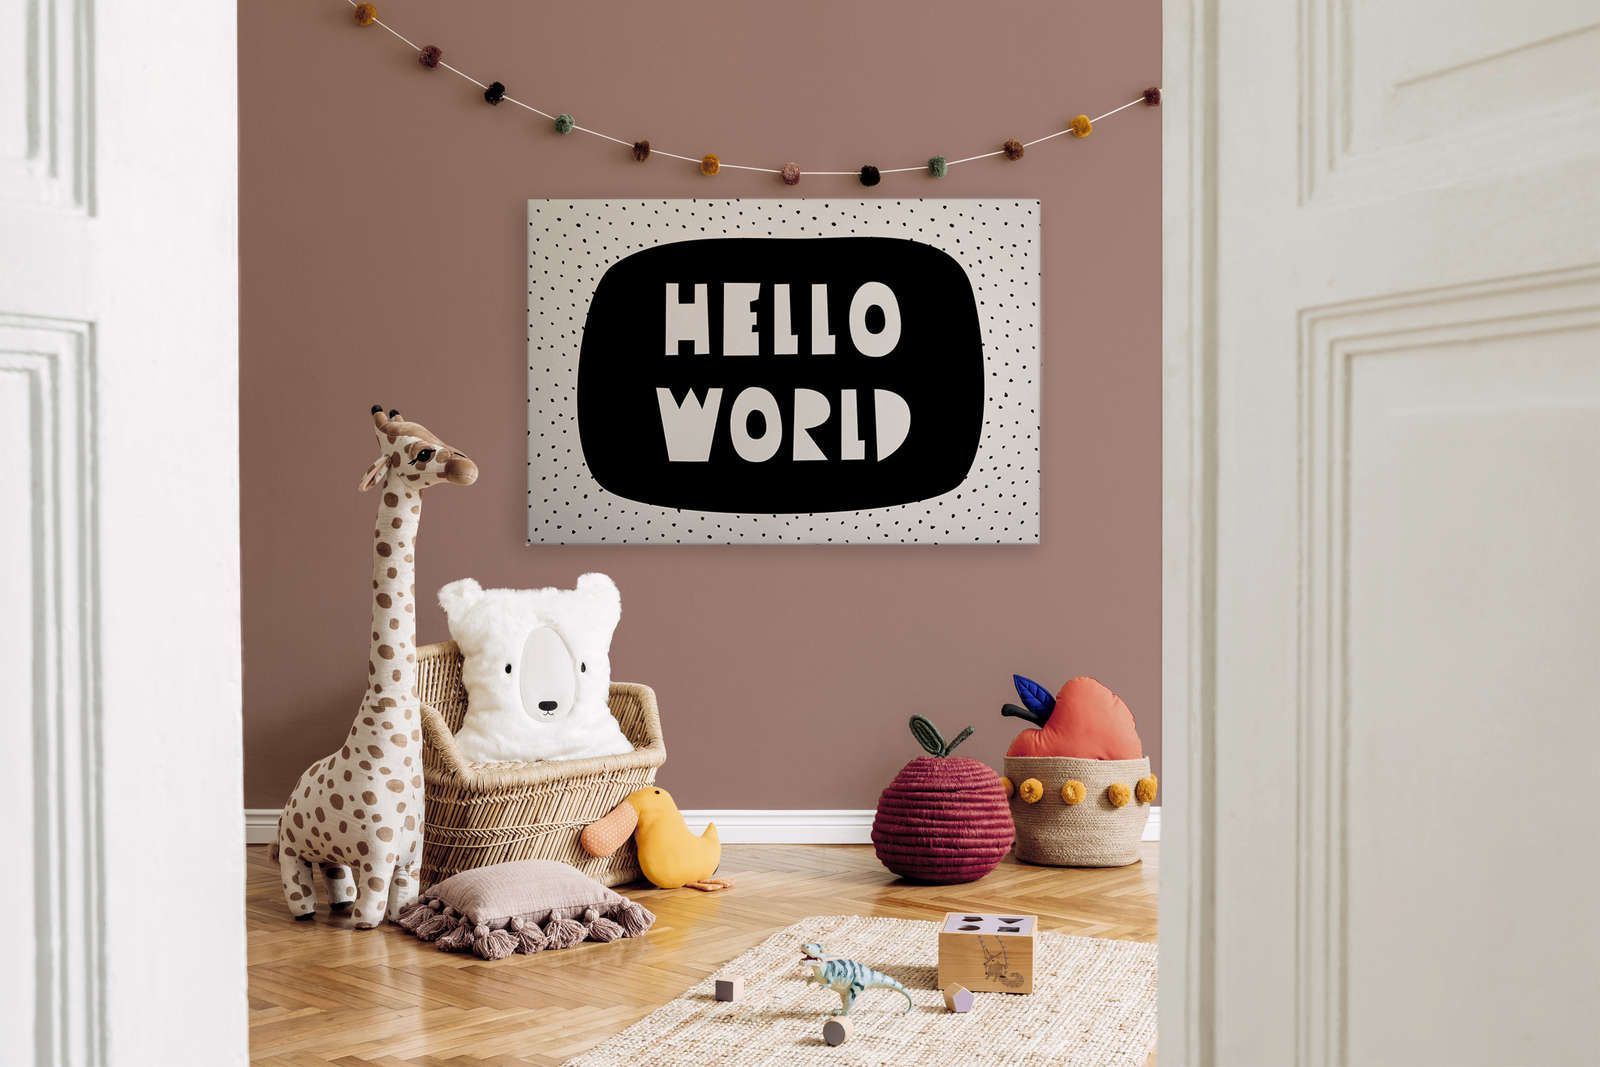             Toile pour chambre d'enfant avec inscription "Hello World" - 120 cm x 80 cm
        